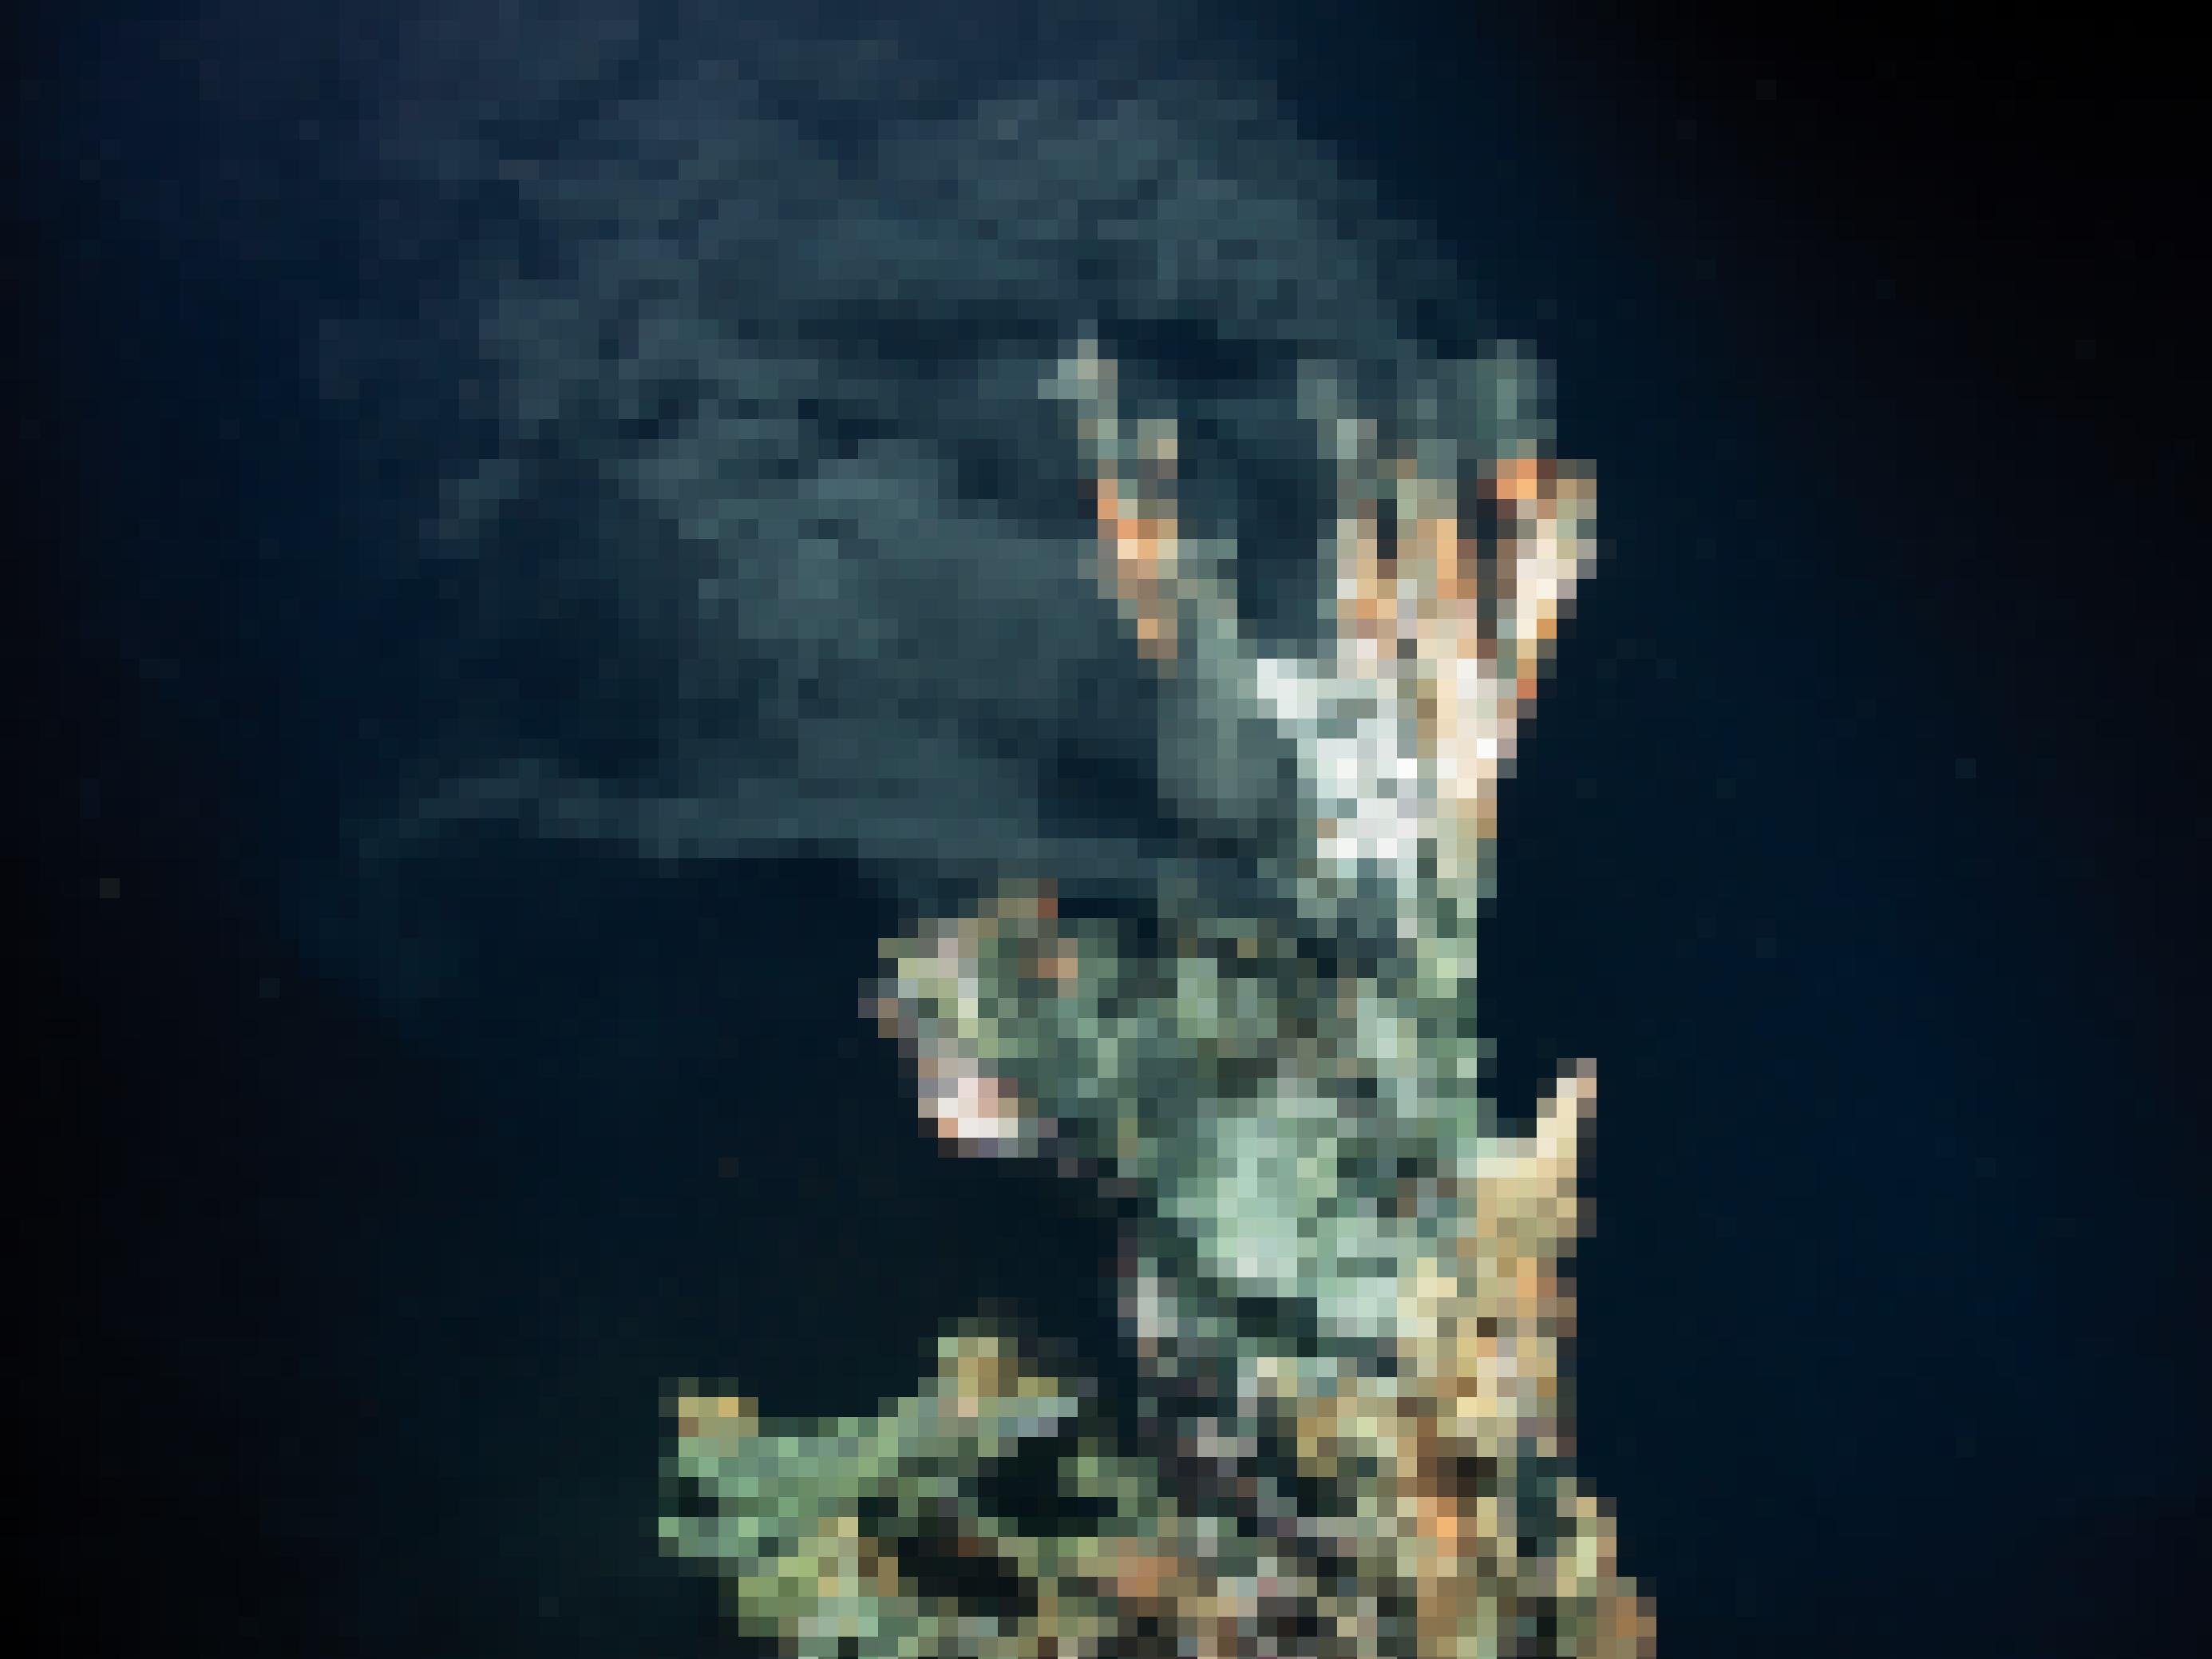 Ein natürlicher Schornstein tief im Meer, aus dem etwas Schwarzes strömt.